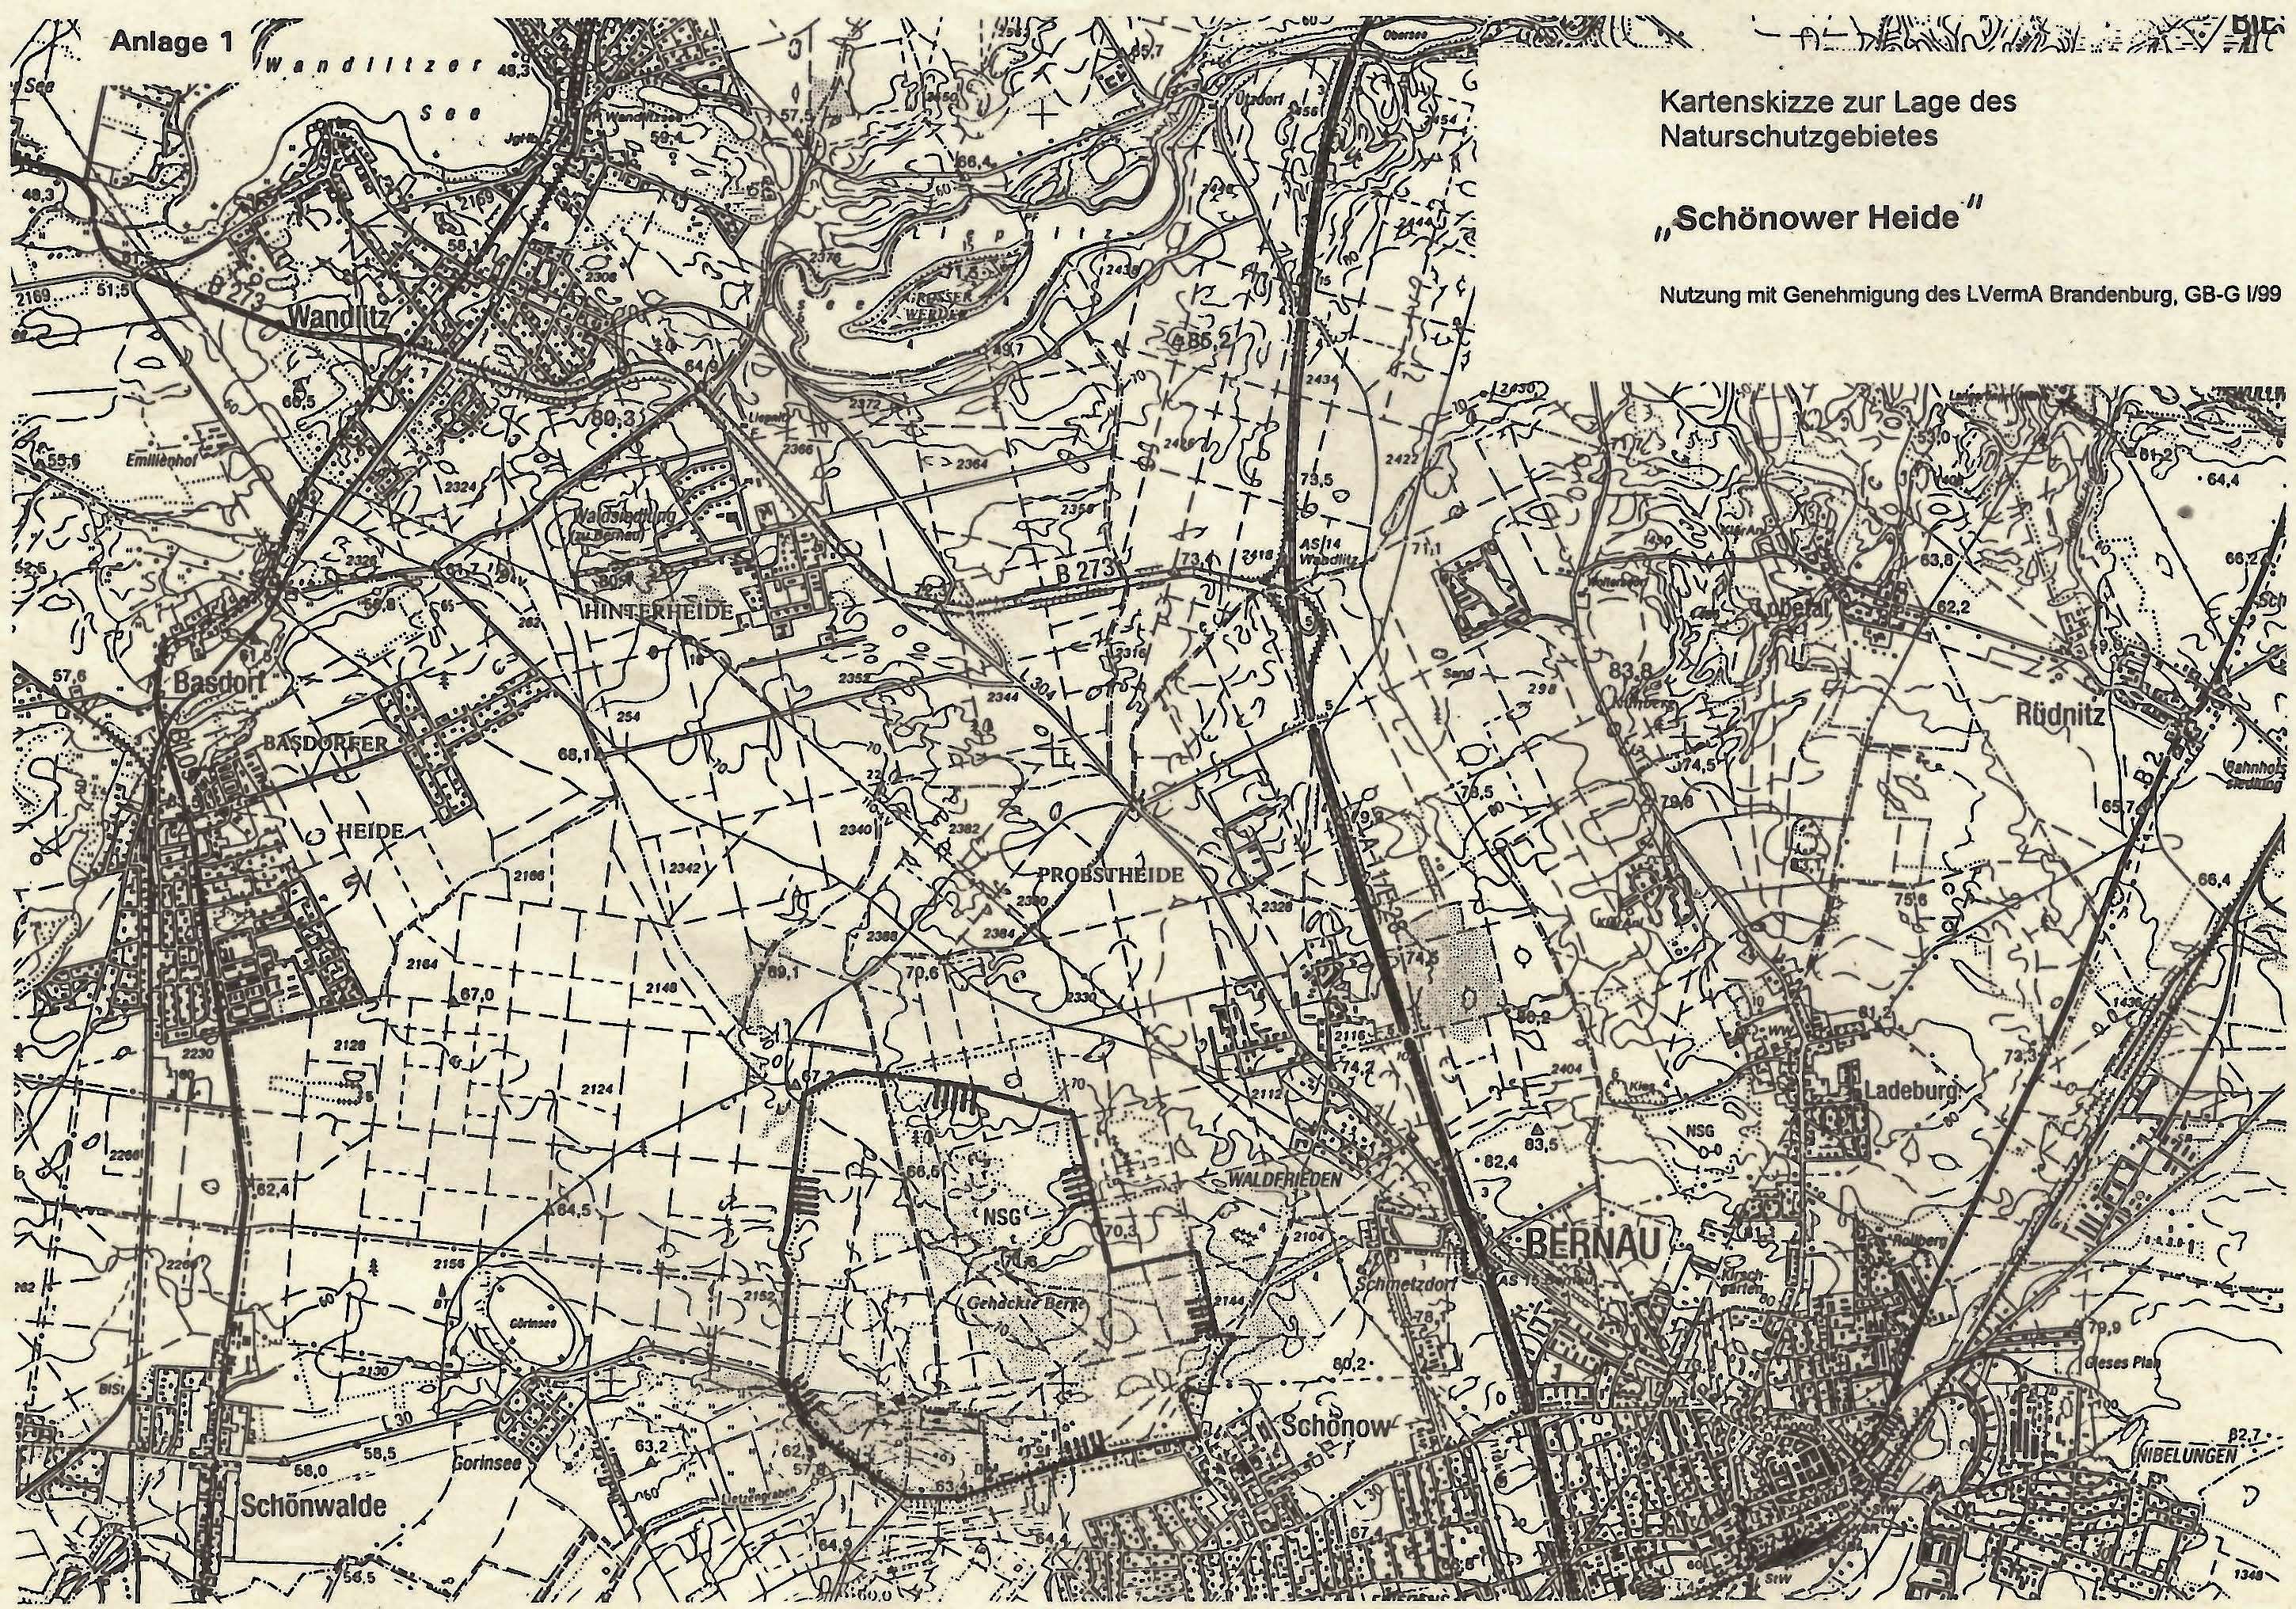 Kartenskizze zur Lage des Naturschutzgebietes "Schönower Heide"